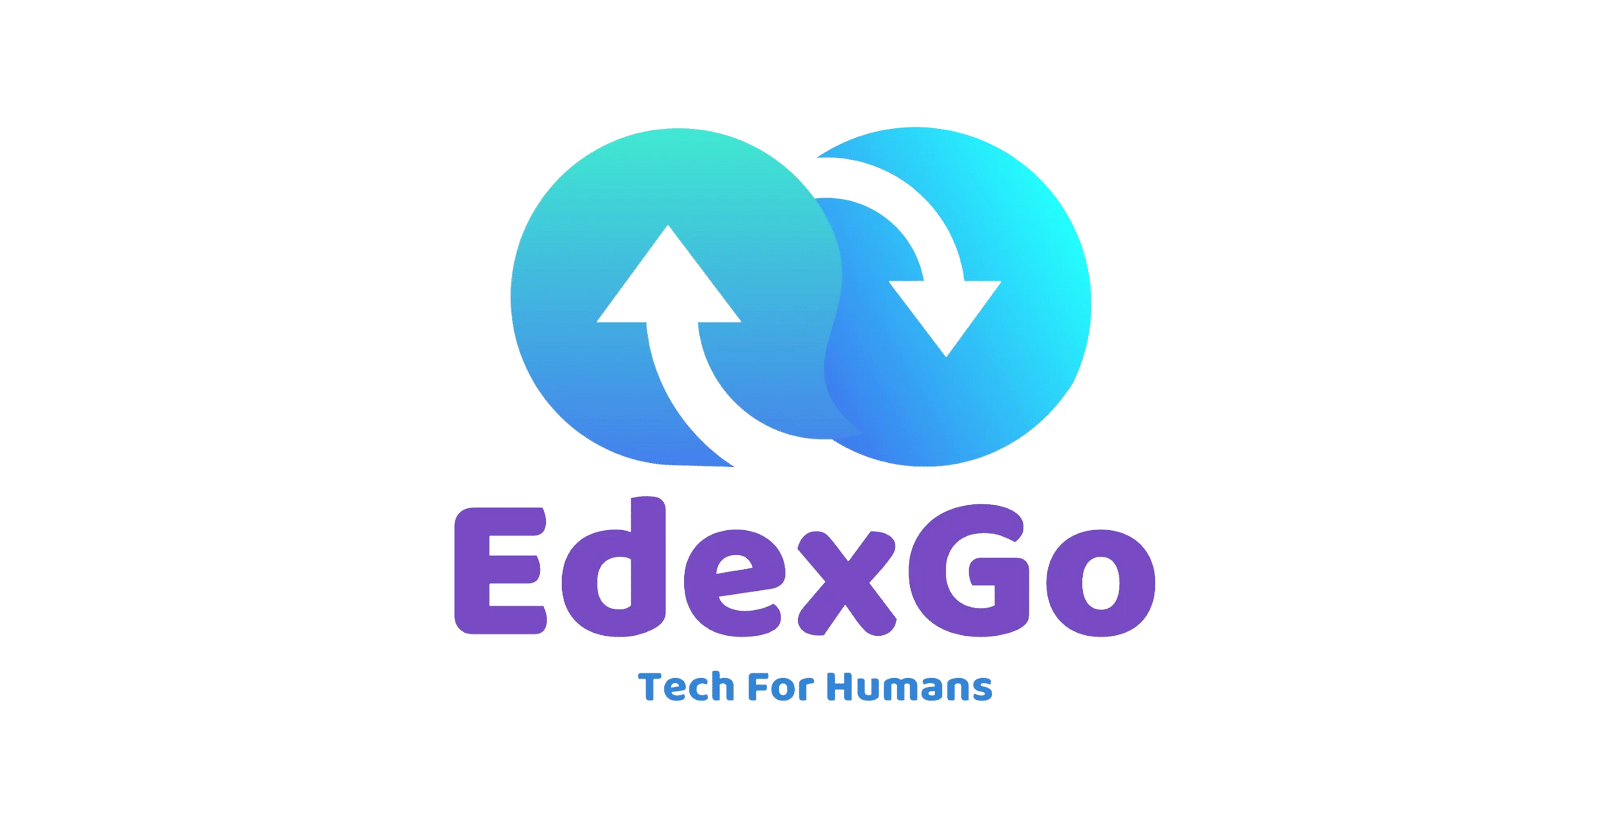 Edexgo - Edited